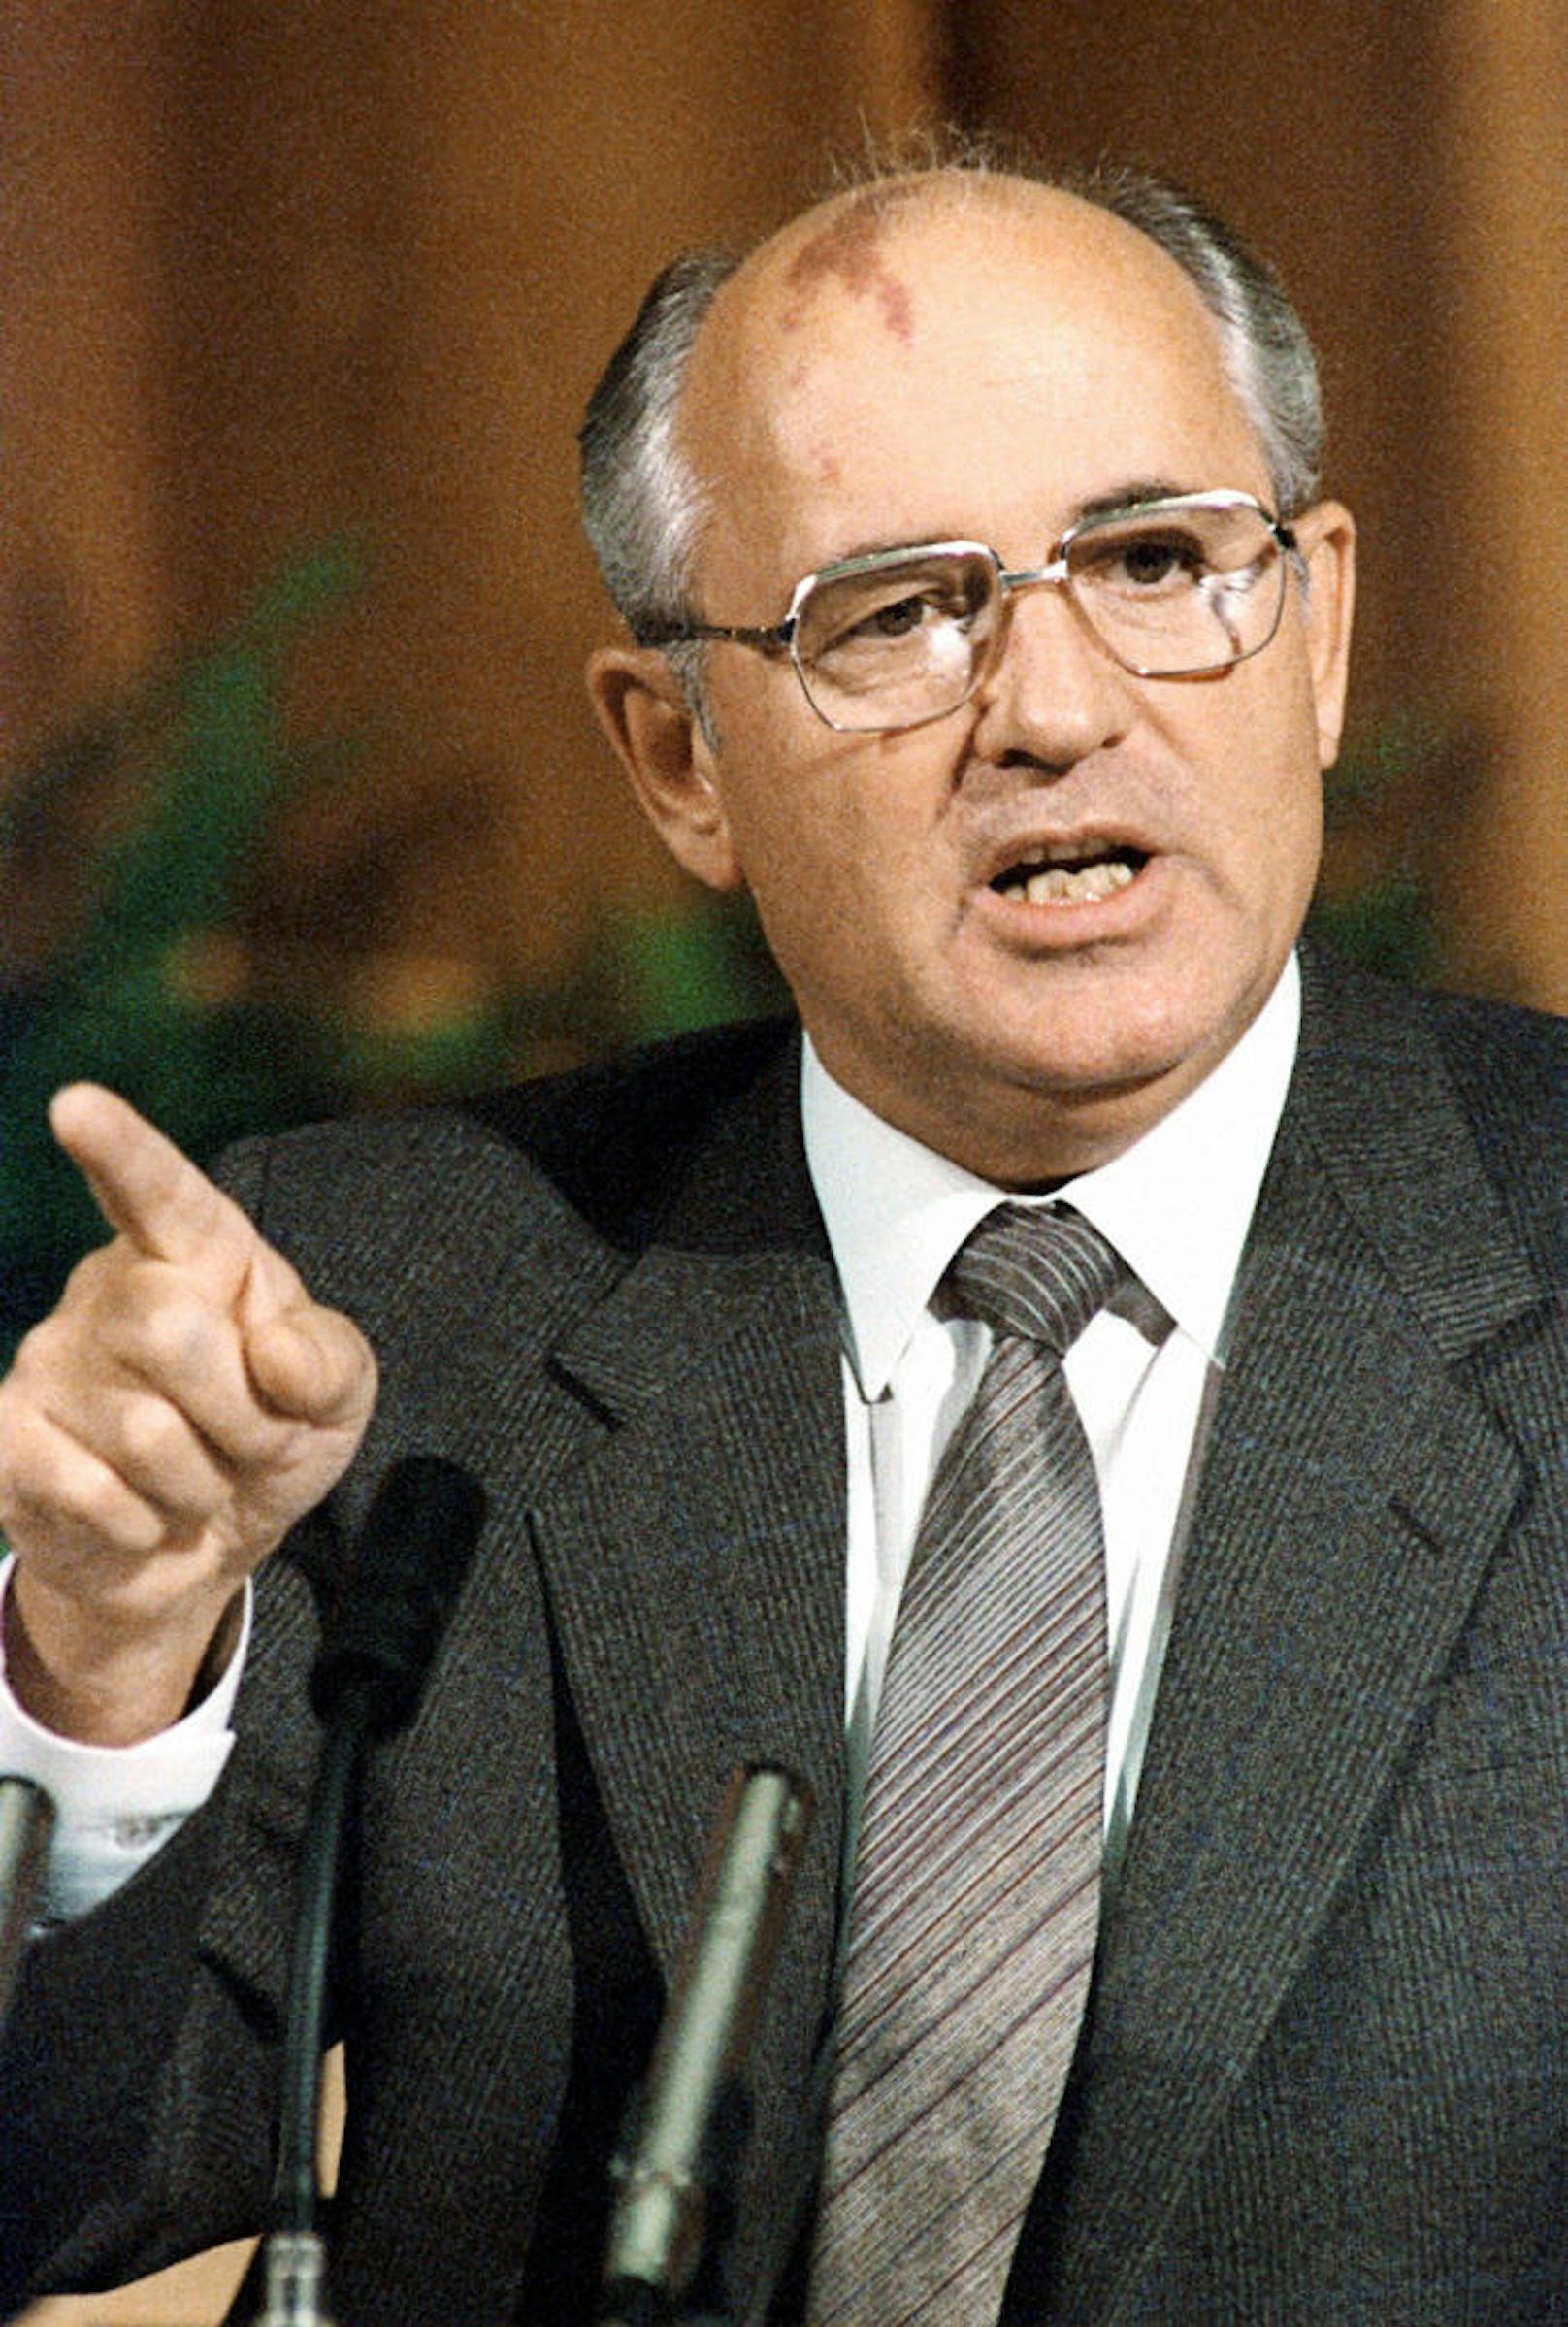 <b>Michail Gorbatschow</b>, März 1985 bis August 1991 Generalsekretär des Zentralkomitees der Kommunistischen Partei der Sowjetunion und von März 1990 bis Dezember 1991 Staatspräsident der Sowjetunion

"Wer zu spät kommt, den bestraft das Leben."